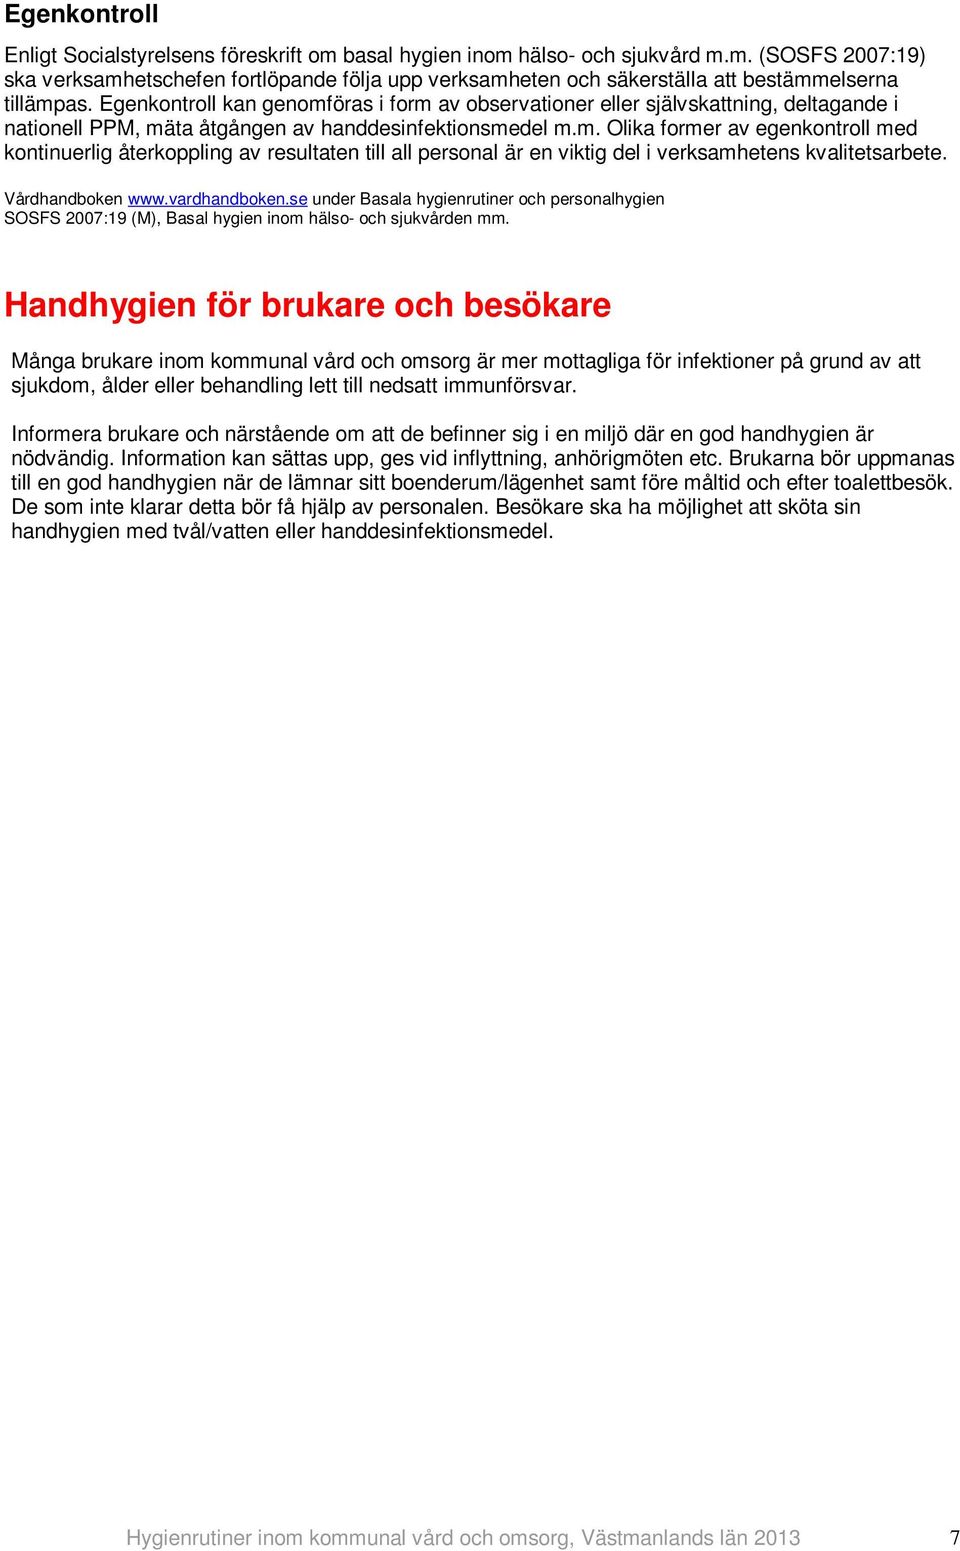 Vårdhandboken www.vardhandboken.se under Basala hygienrutiner och personalhygien SOSFS 2007:19 (M), Basal hygien inom hälso- och sjukvården mm.